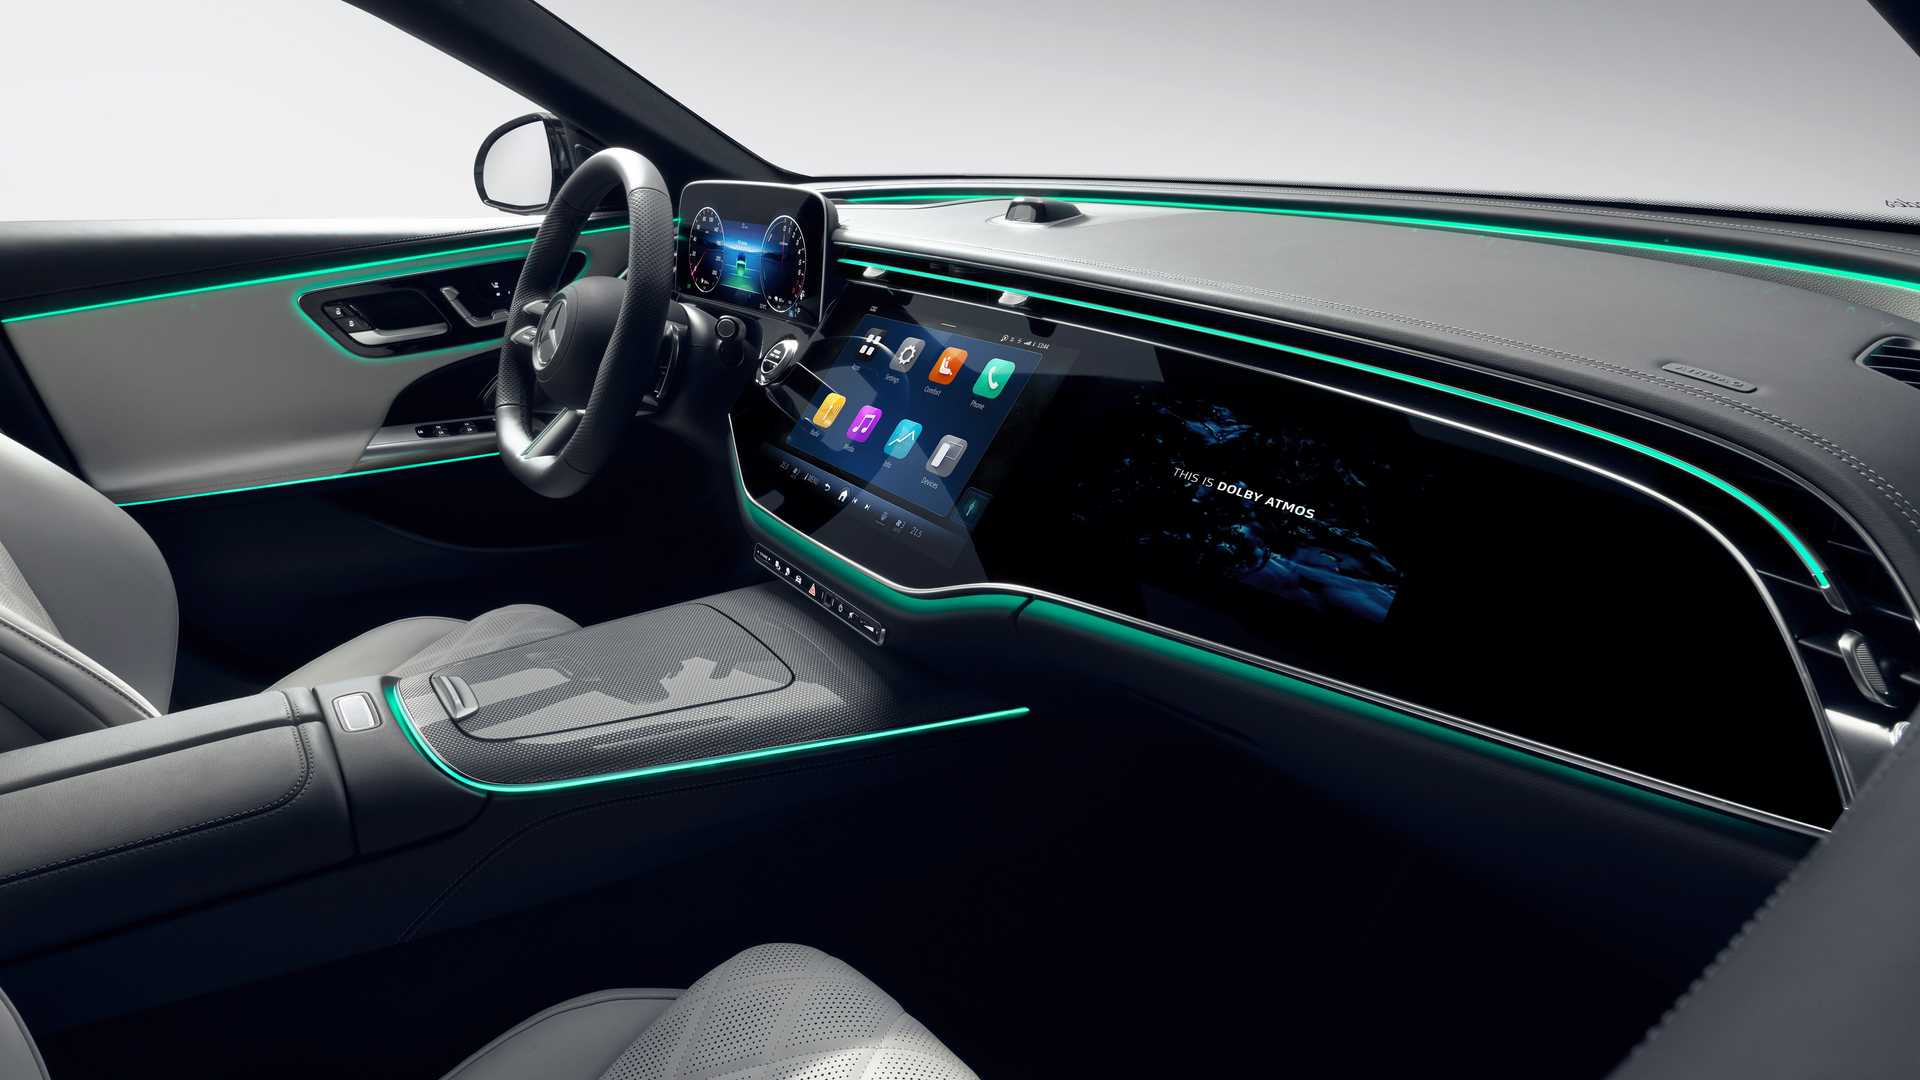 Mercedes-Benz công bố sớm nội thất E-Class mới với màn hình khổng lồ, TikTok và camera selfie mặc định - Ảnh 5.